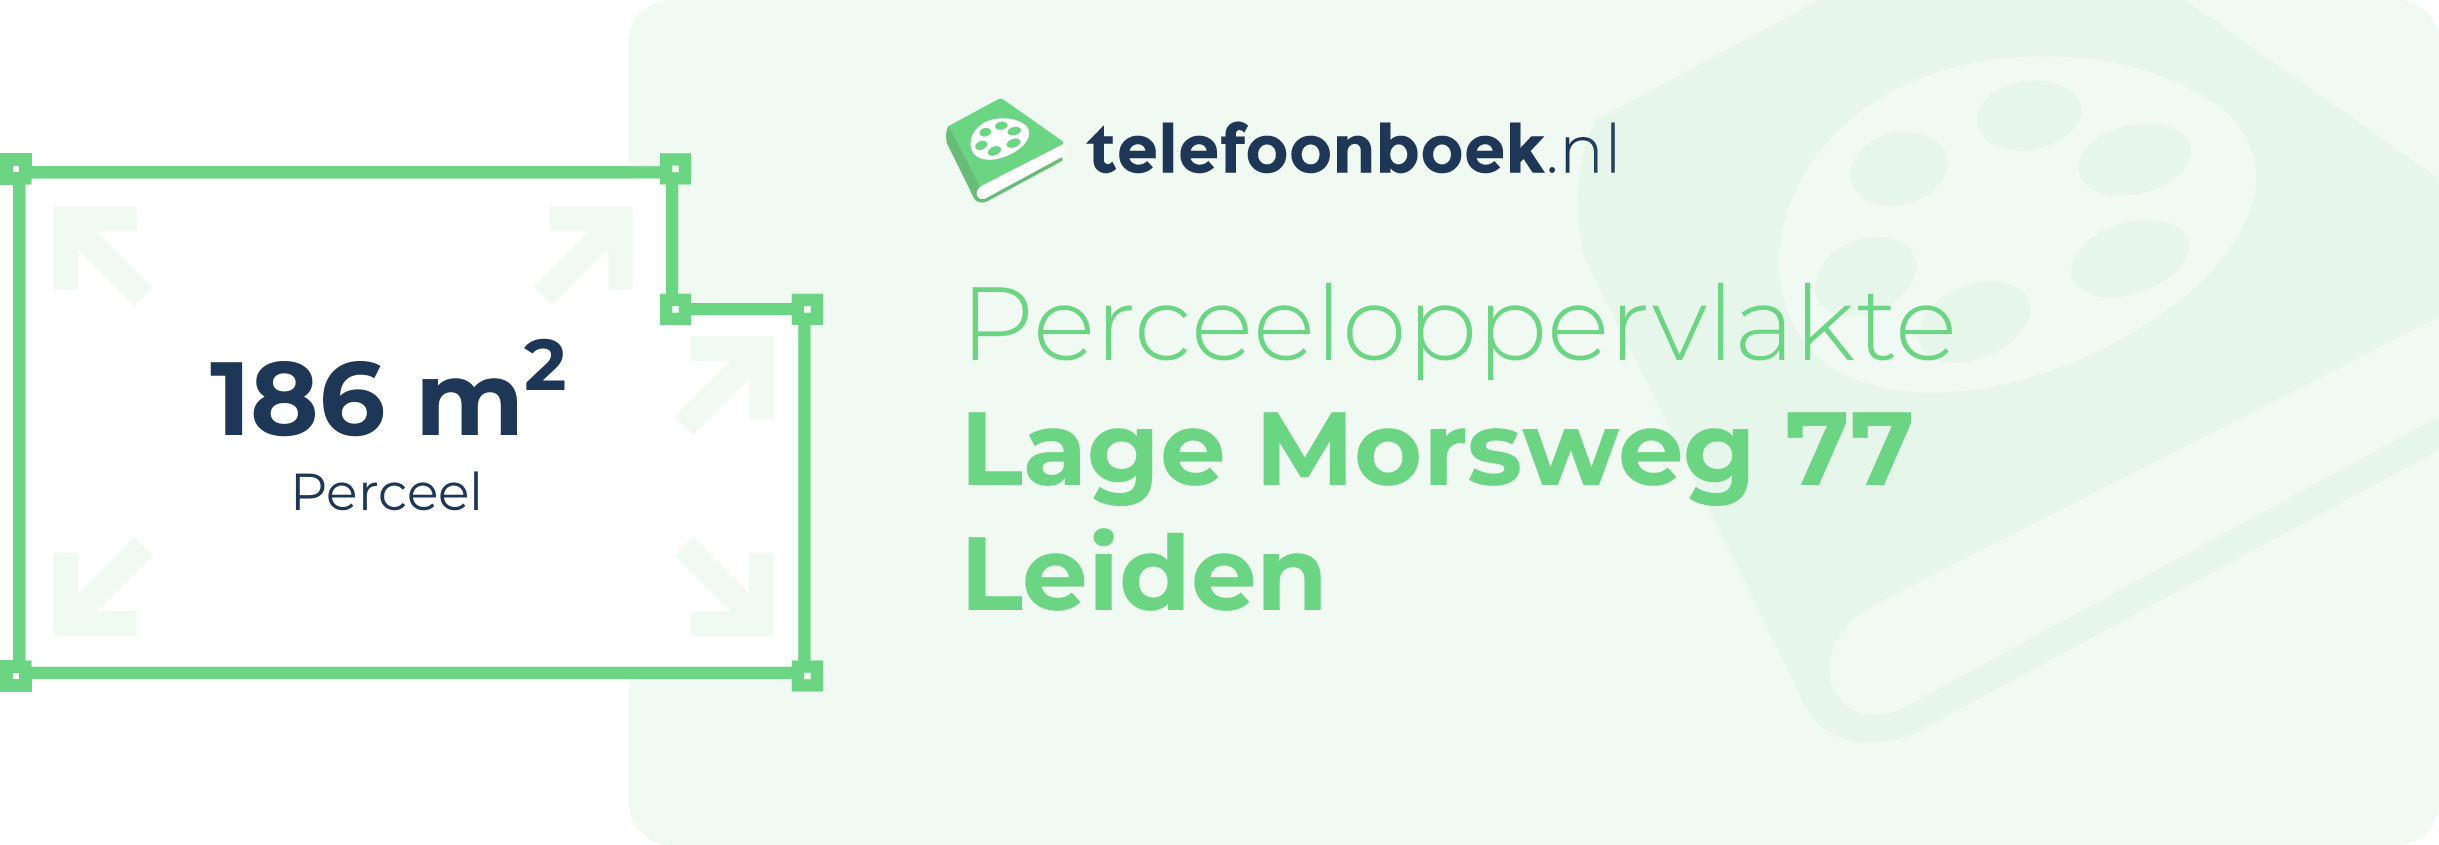 Perceeloppervlakte Lage Morsweg 77 Leiden